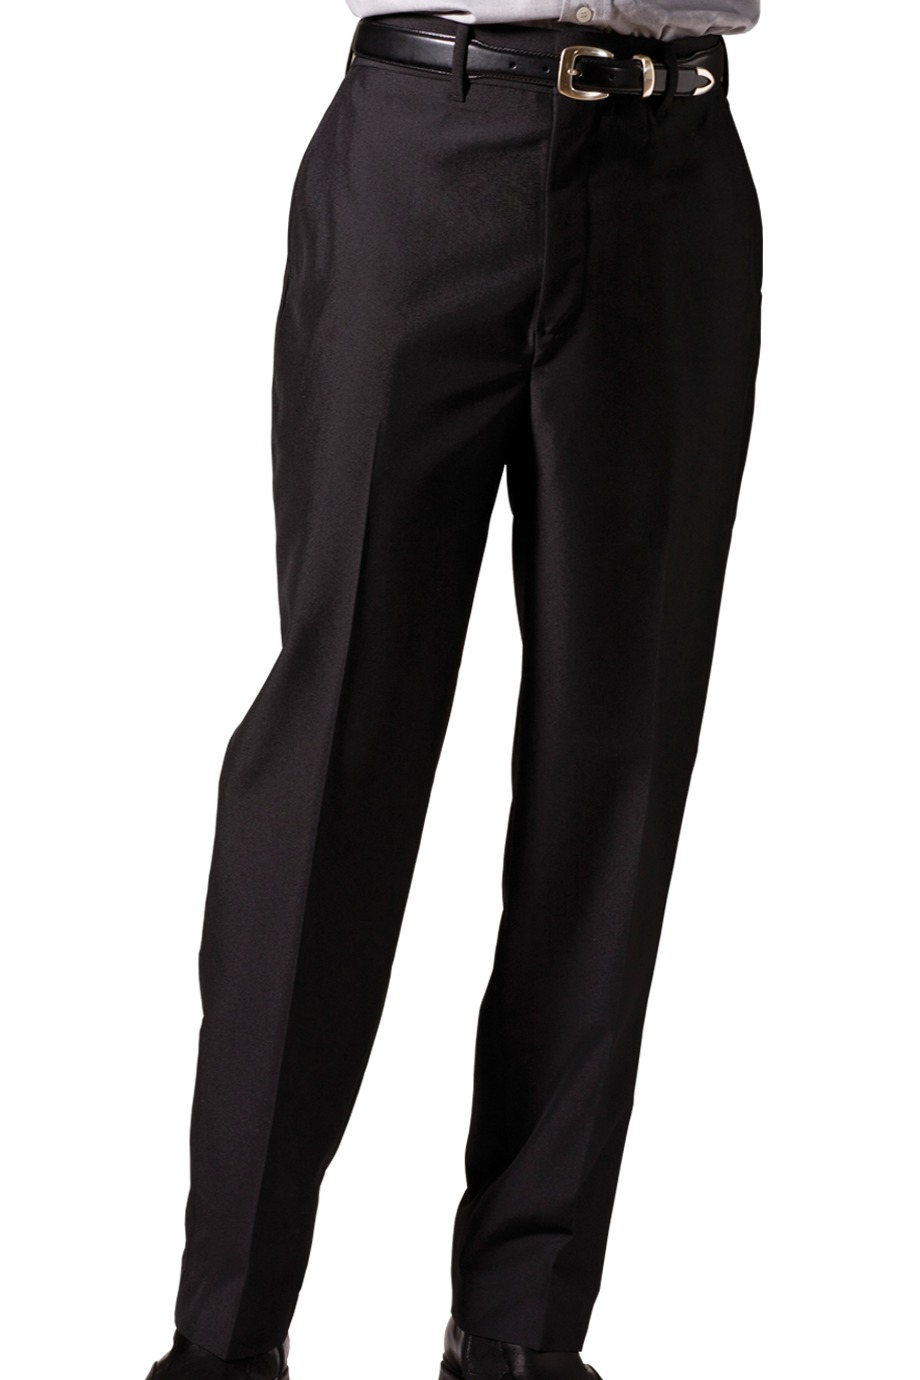 Edwards Garment 2750 - Men's Lightweight Wool Blend Flat Front Pant